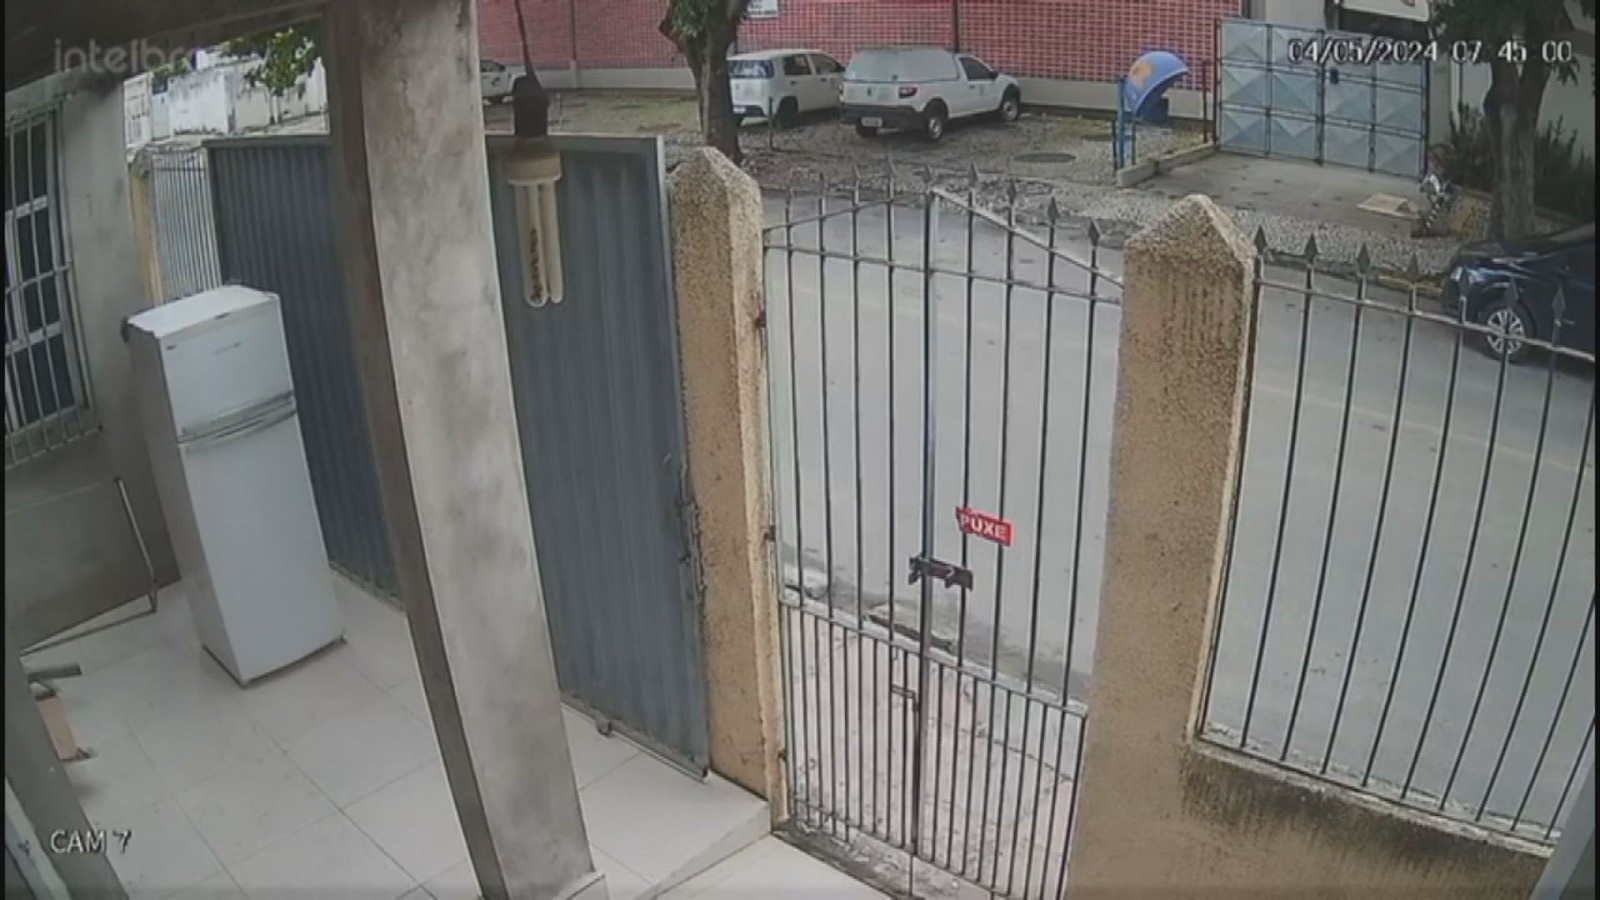 VÍDEO: homens arrombam portão e furtam geladeira de igreja evangélica no interior da Bahia